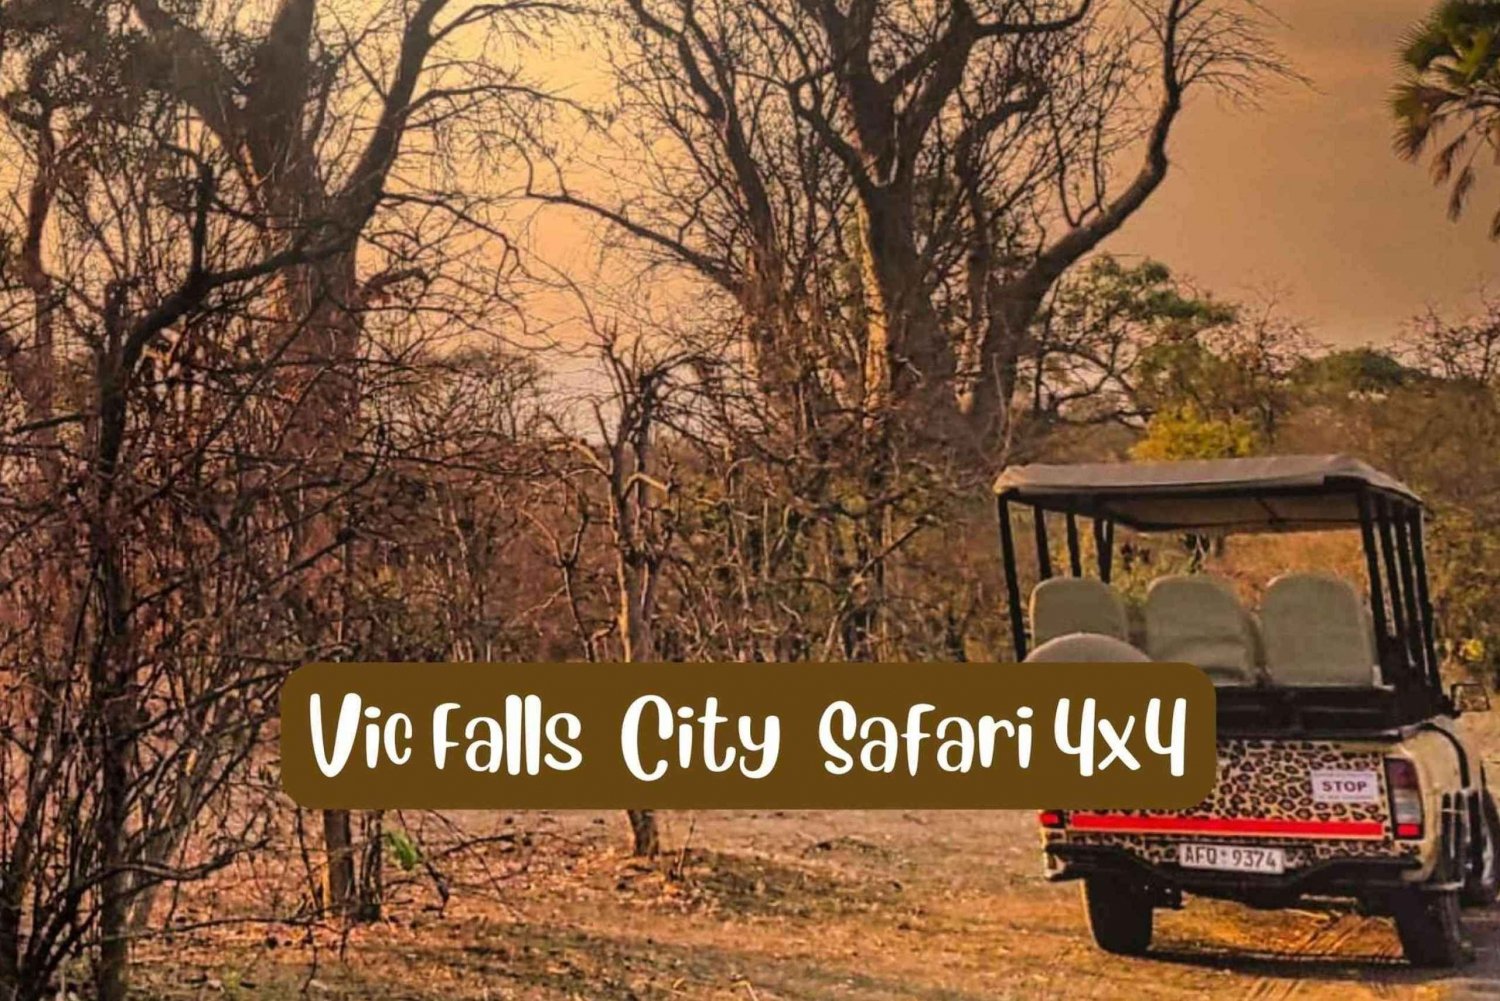 Wodospady Wiktorii: 4x4 Victoria Falls City Safari